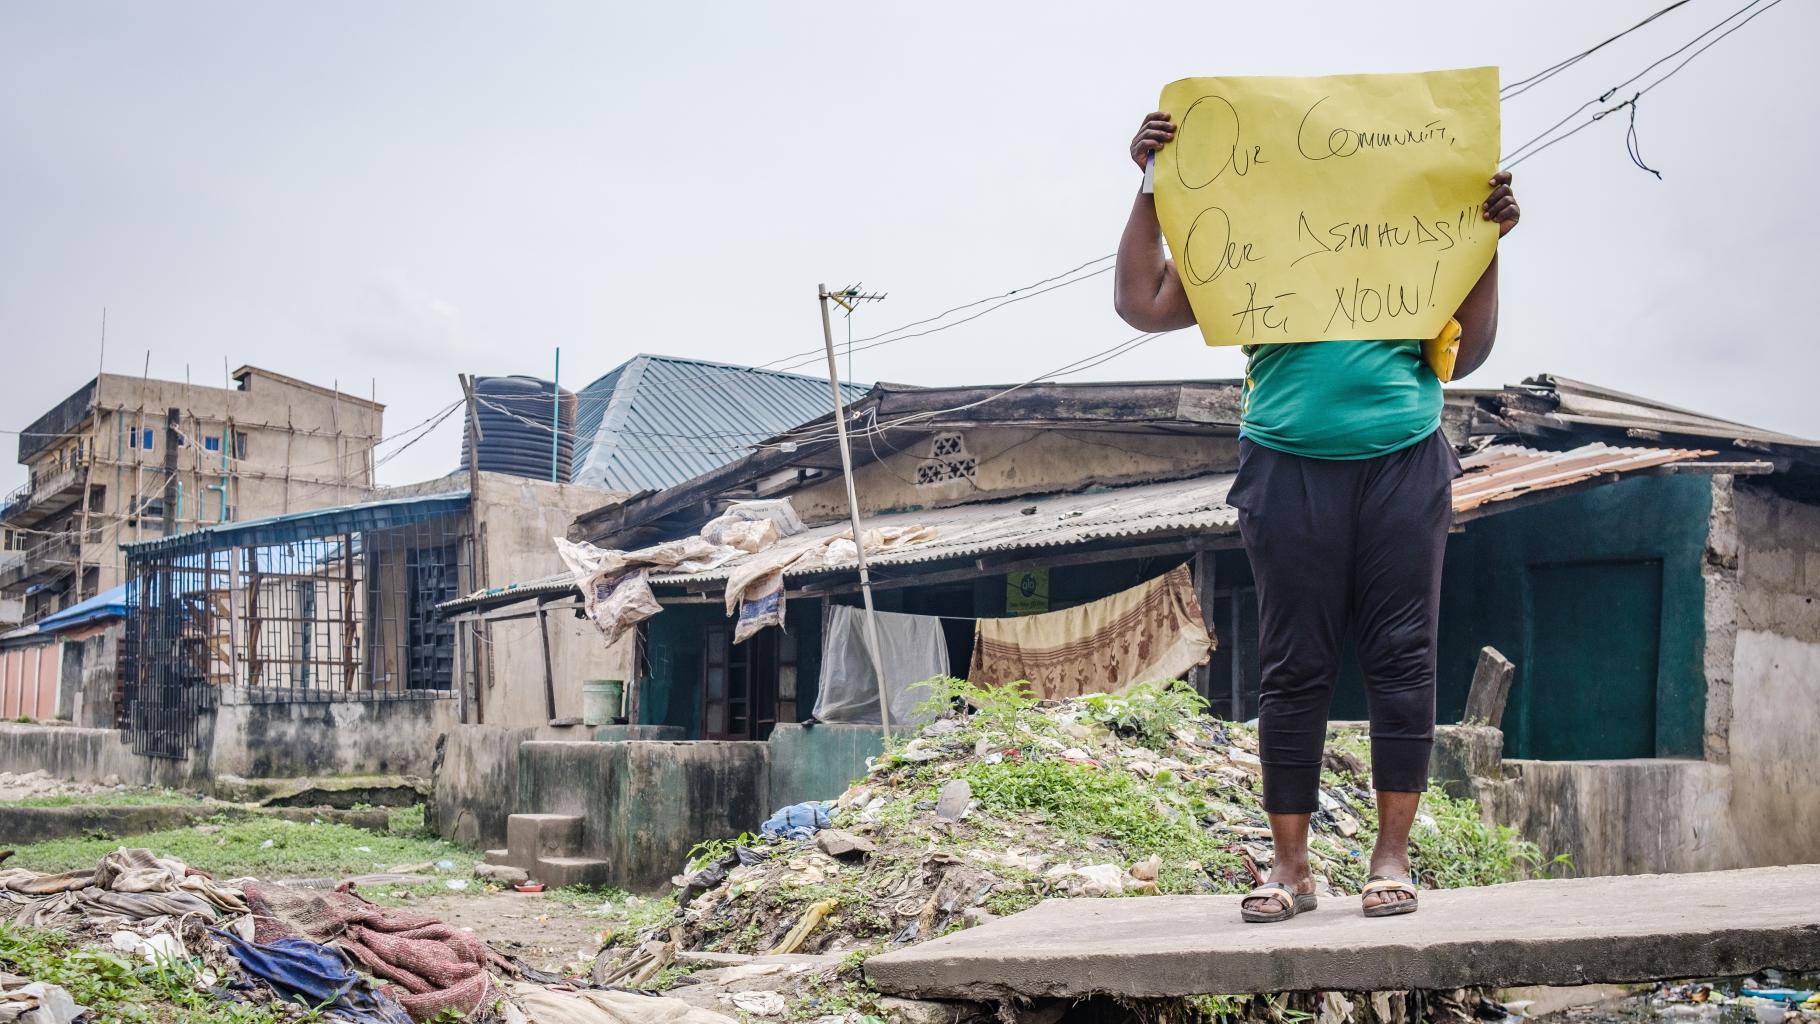 Eine Aktivistin hält ein Plakat mit der Aufschrift "Unsere Community, unsere Forderungen! Jetzt handeln!" hoch. Sie trägt ein grünes T-Shirt und eine dunkle Hose. Im Hintergrund sind Häuser zu sehen.